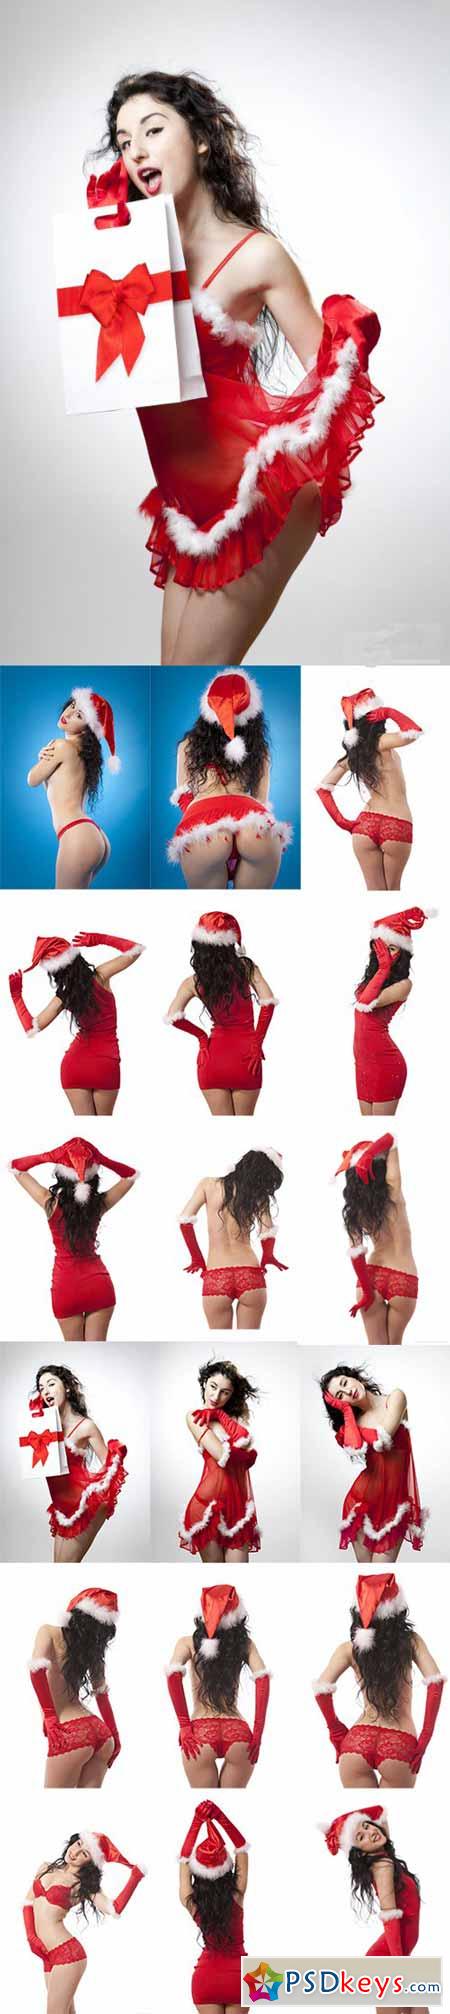 Sexy Santa Girl Stock Photo 25xJPG